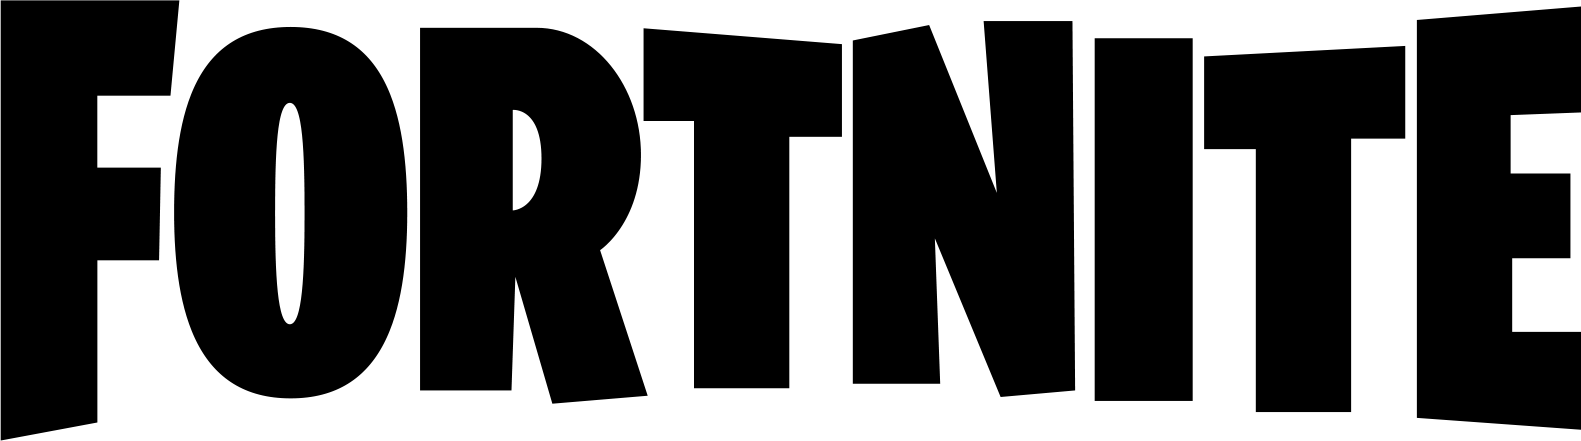 Fortnite Battle Royale Logo - Fortnite battle royale logo png 1 » PNG Image